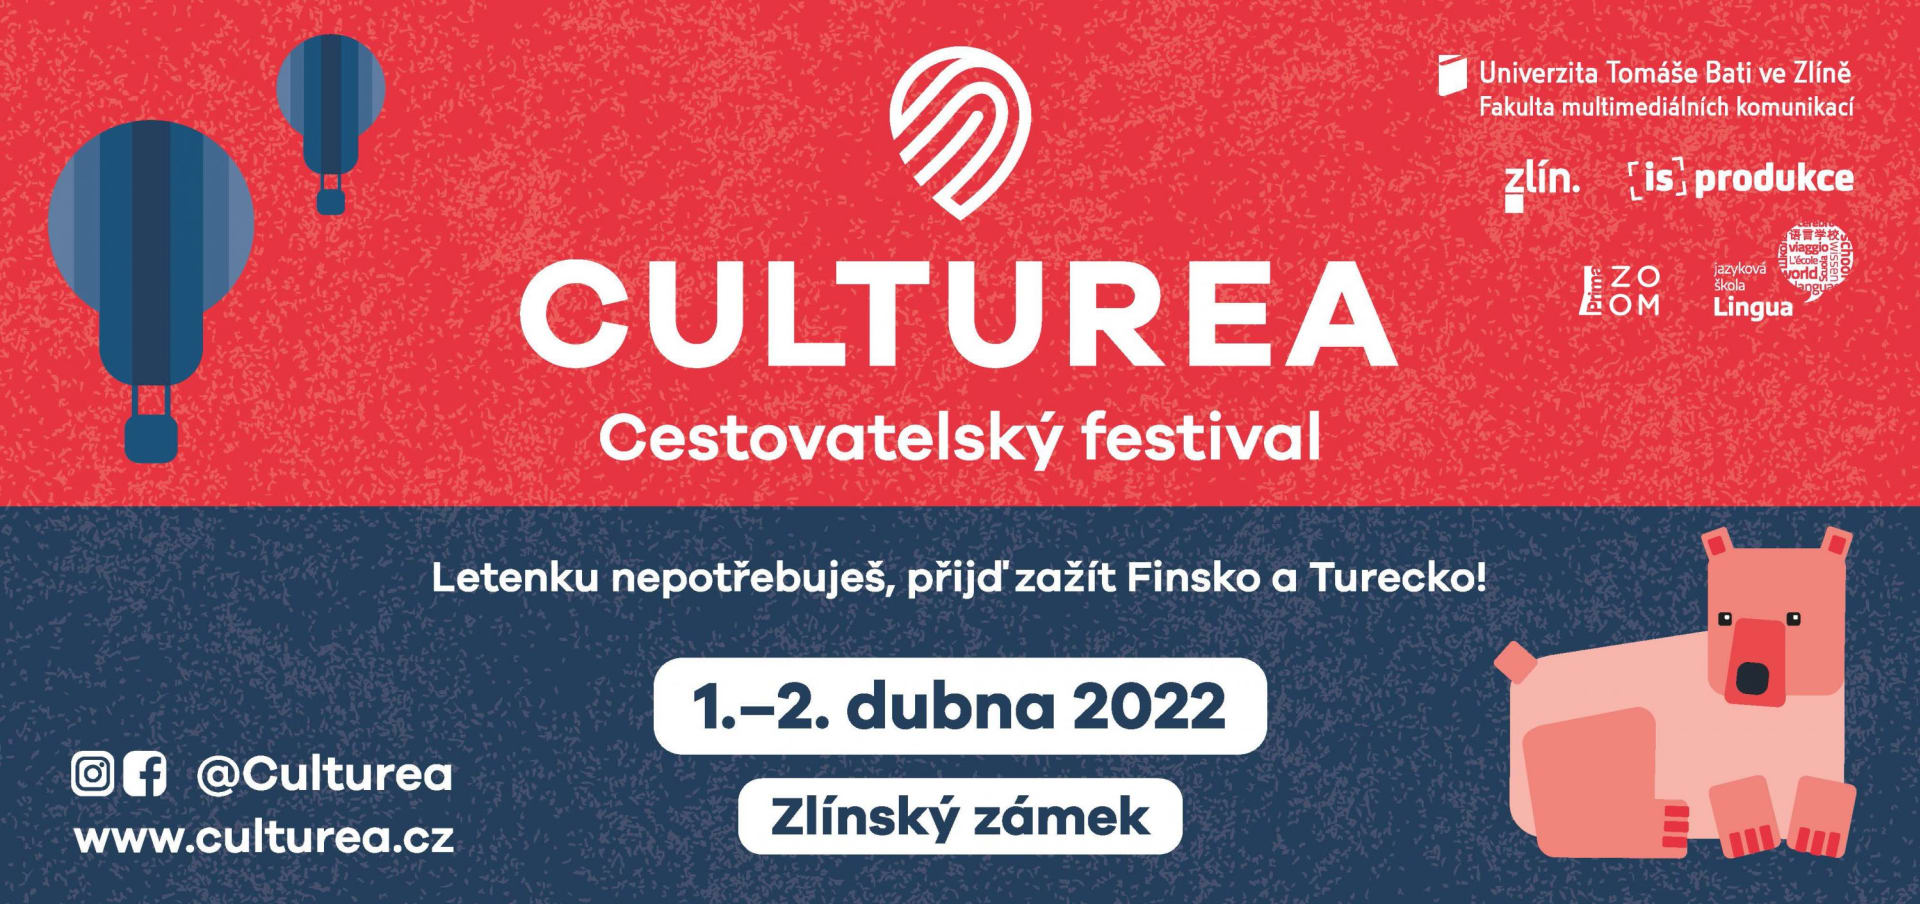 Festival Culturea 2022